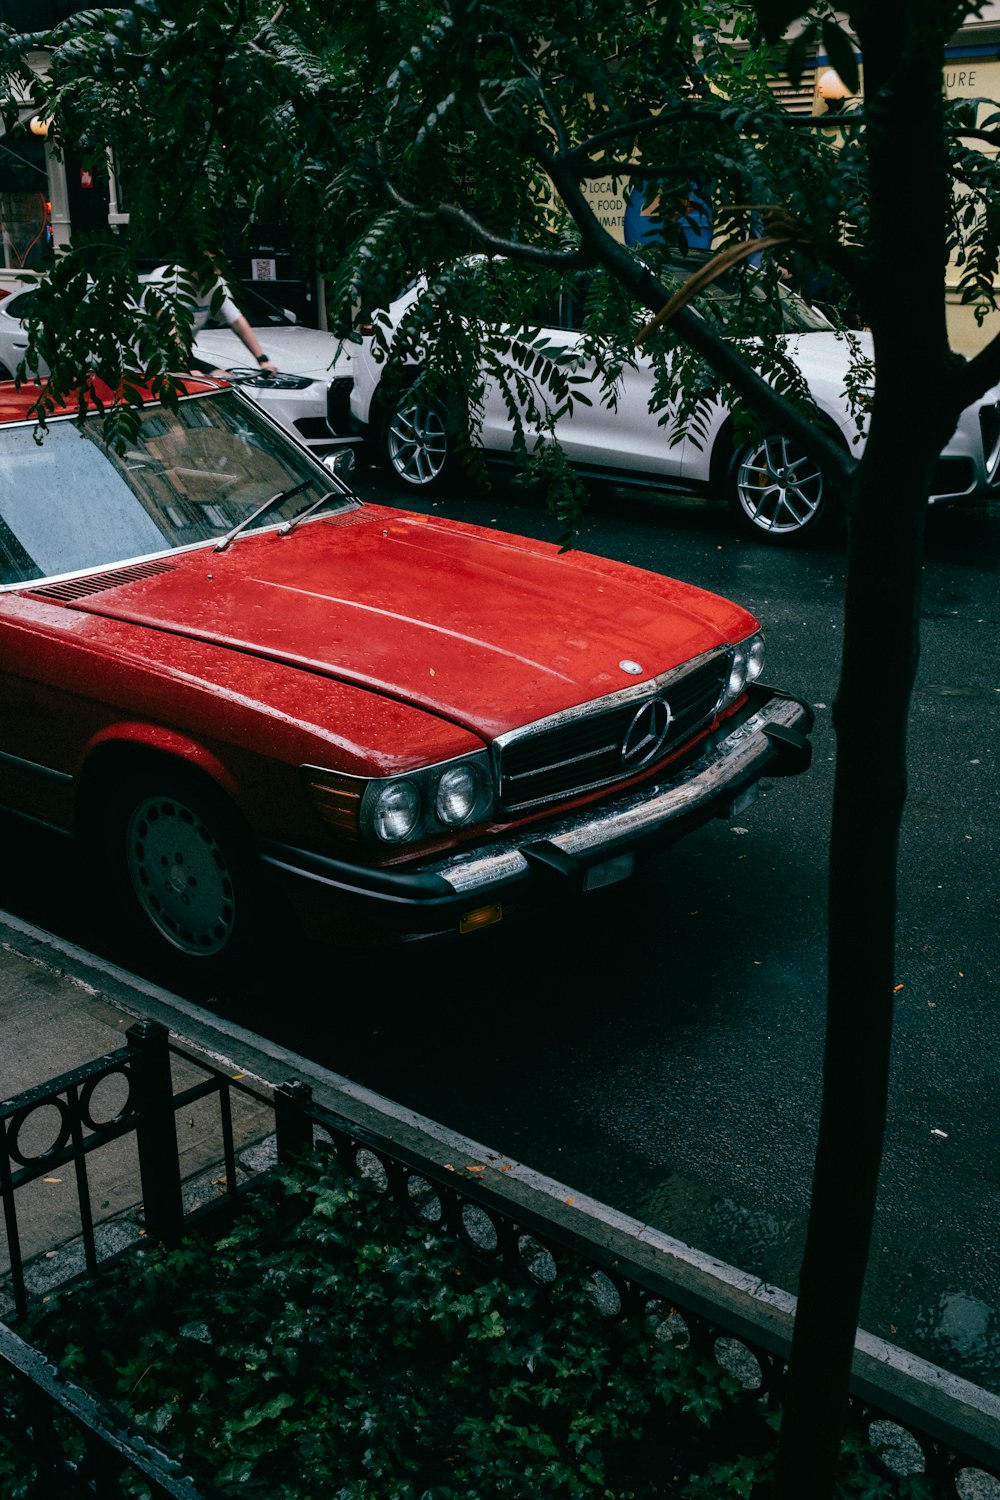 Ein rotes Auto, das am Straßenrand geparkt ist